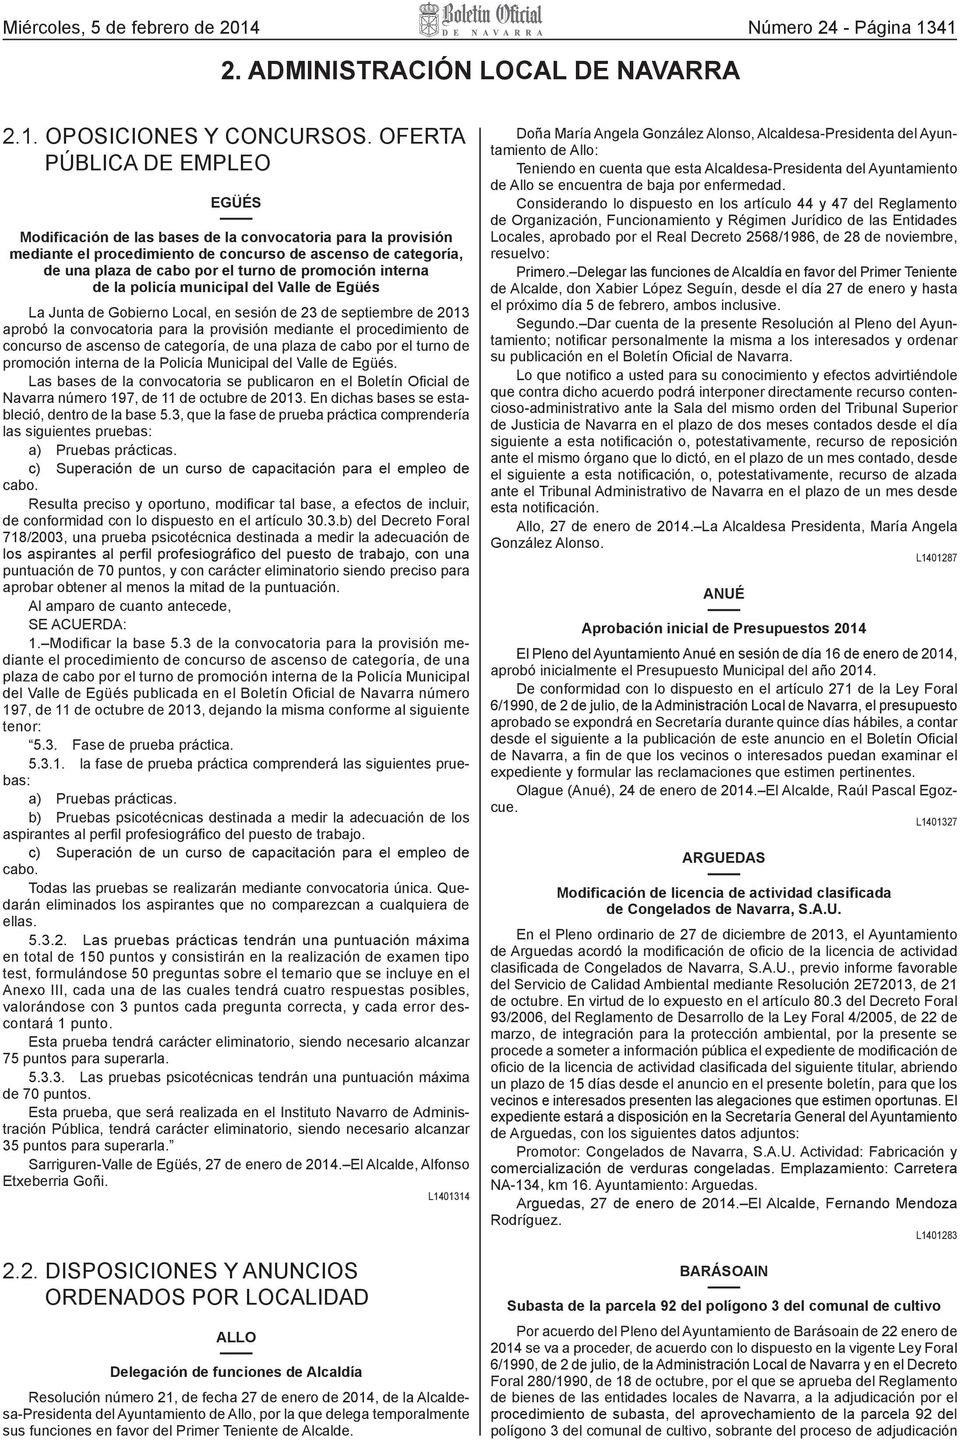 promoción interna de la policía municipal del Valle de Egüés La Junta de Gobierno Local, en sesión de 23 de septiembre de 2013 aprobó la convocatoria para la provisión mediante el procedimiento de